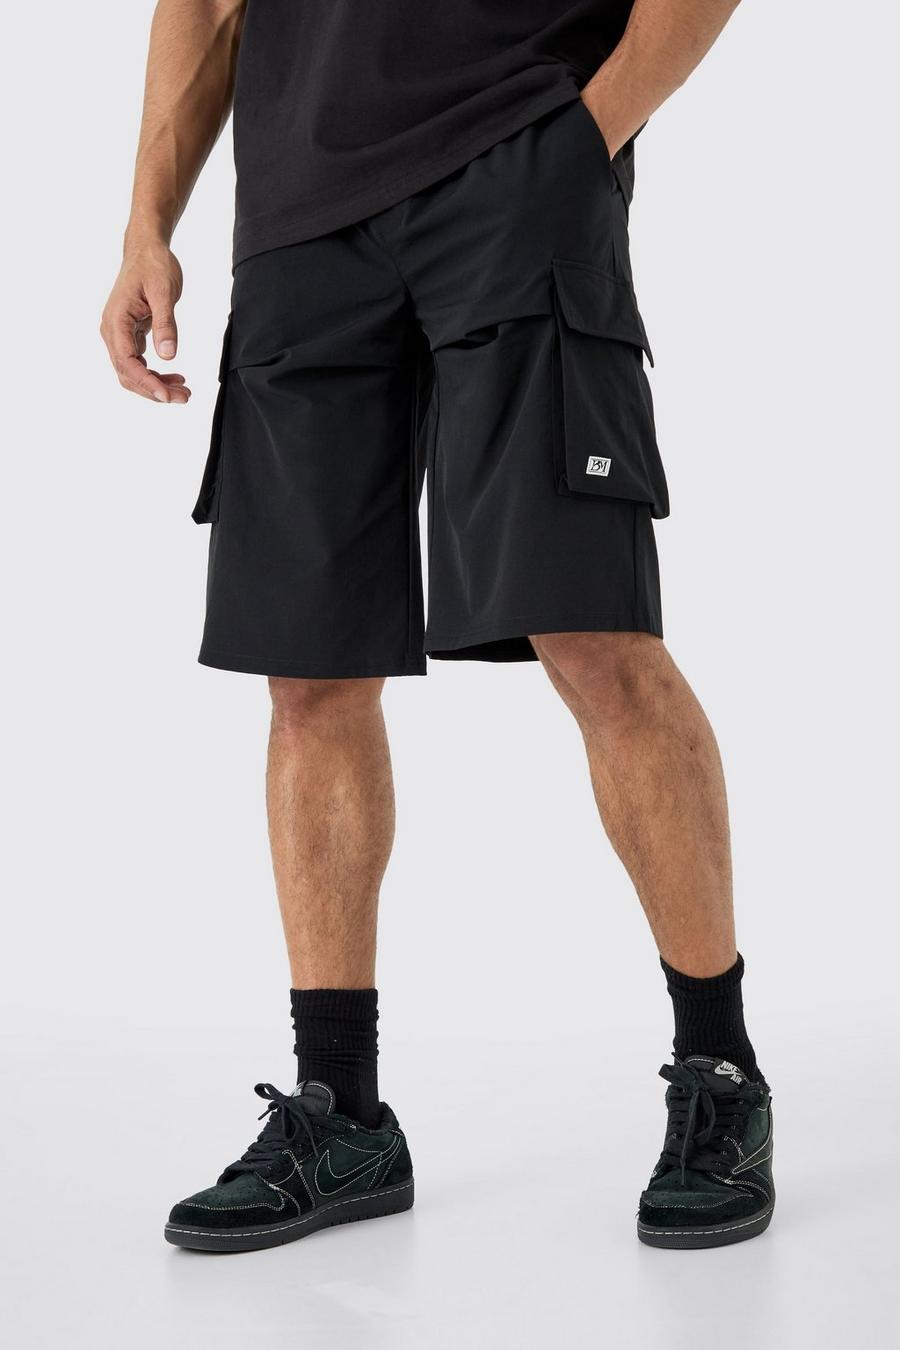 Lockere elastische Stretch-Shorts mit Logo, Black